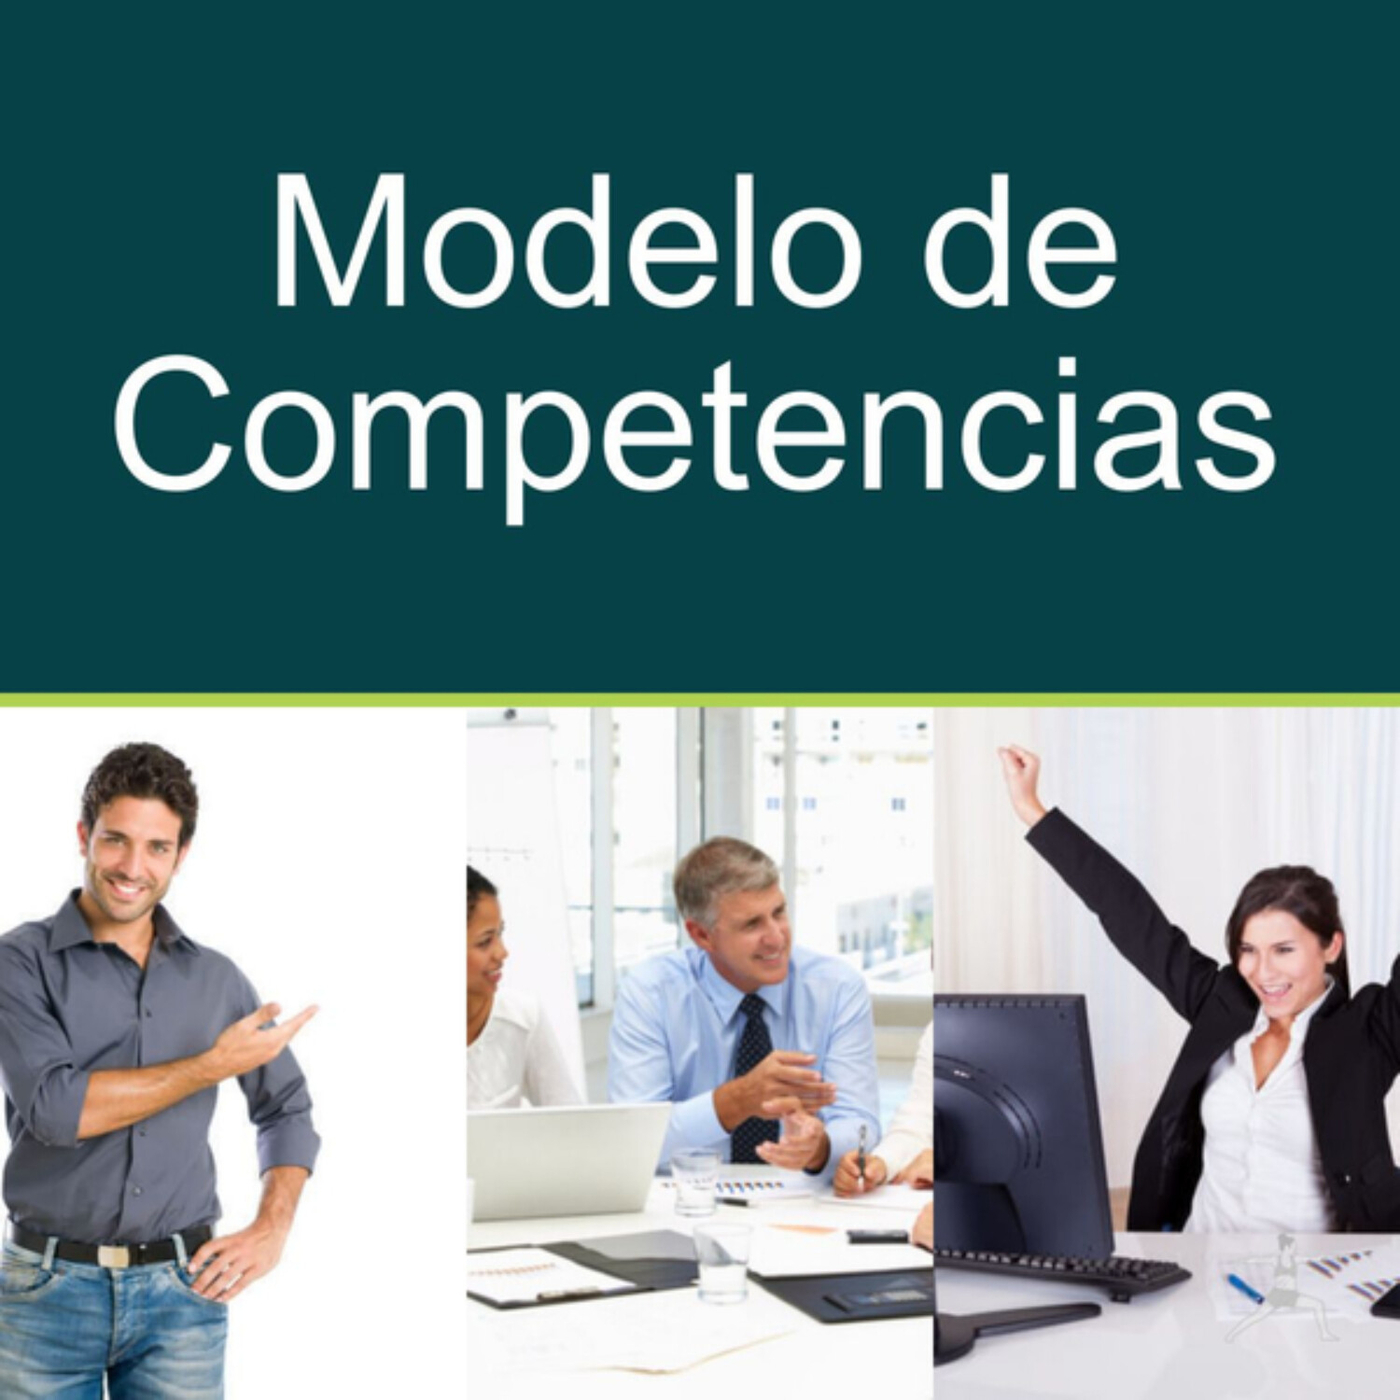 Modelo de Competencias - Excelencia en Recursos Humanos 